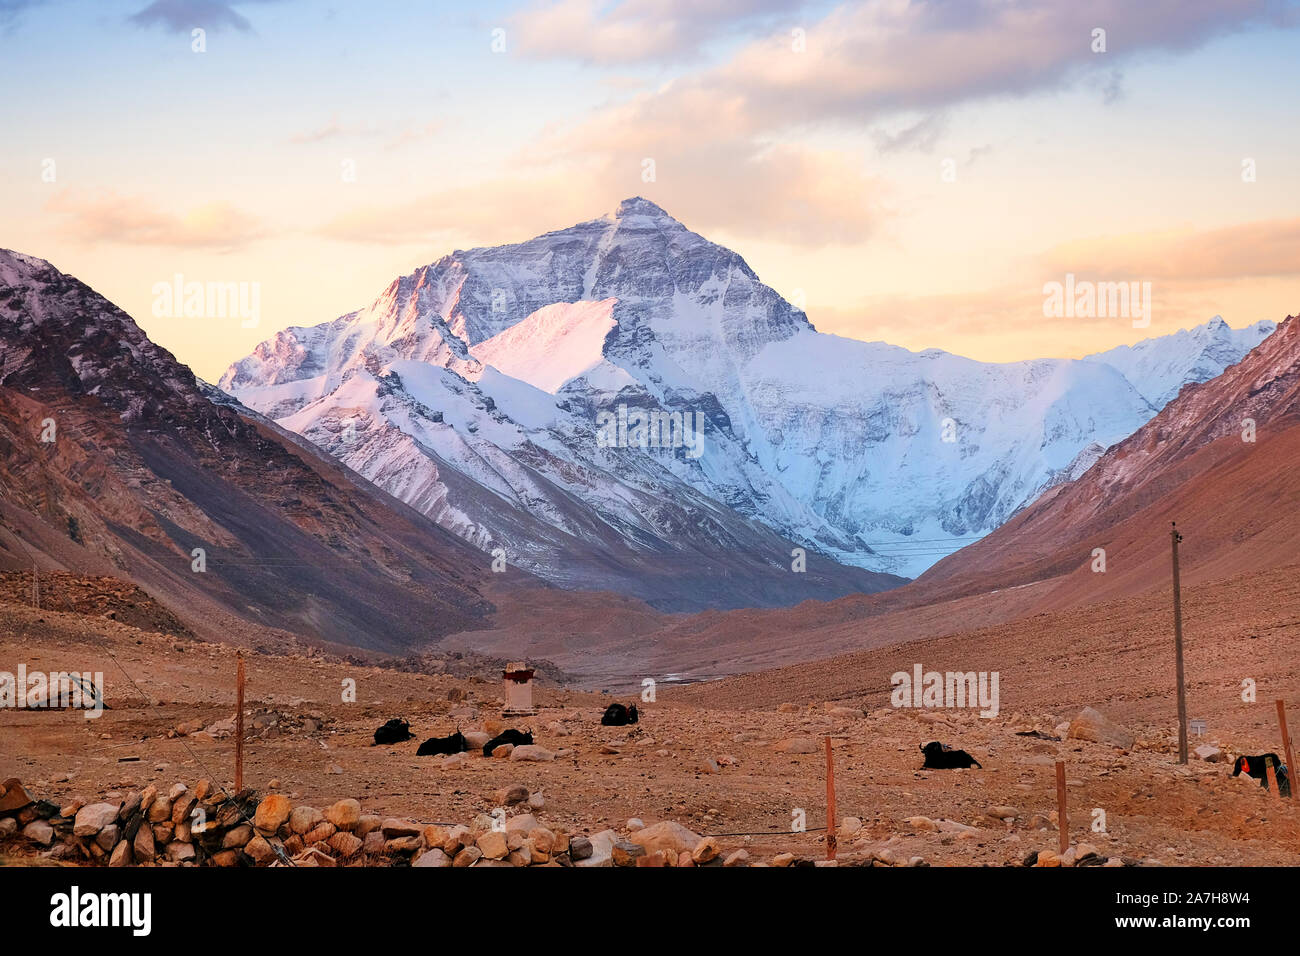 Les yacks dans le plateau tibétain dans une vallée brune entourant le mont Everest, contre un ciel du matin coloré chaleureux. Banque D'Images